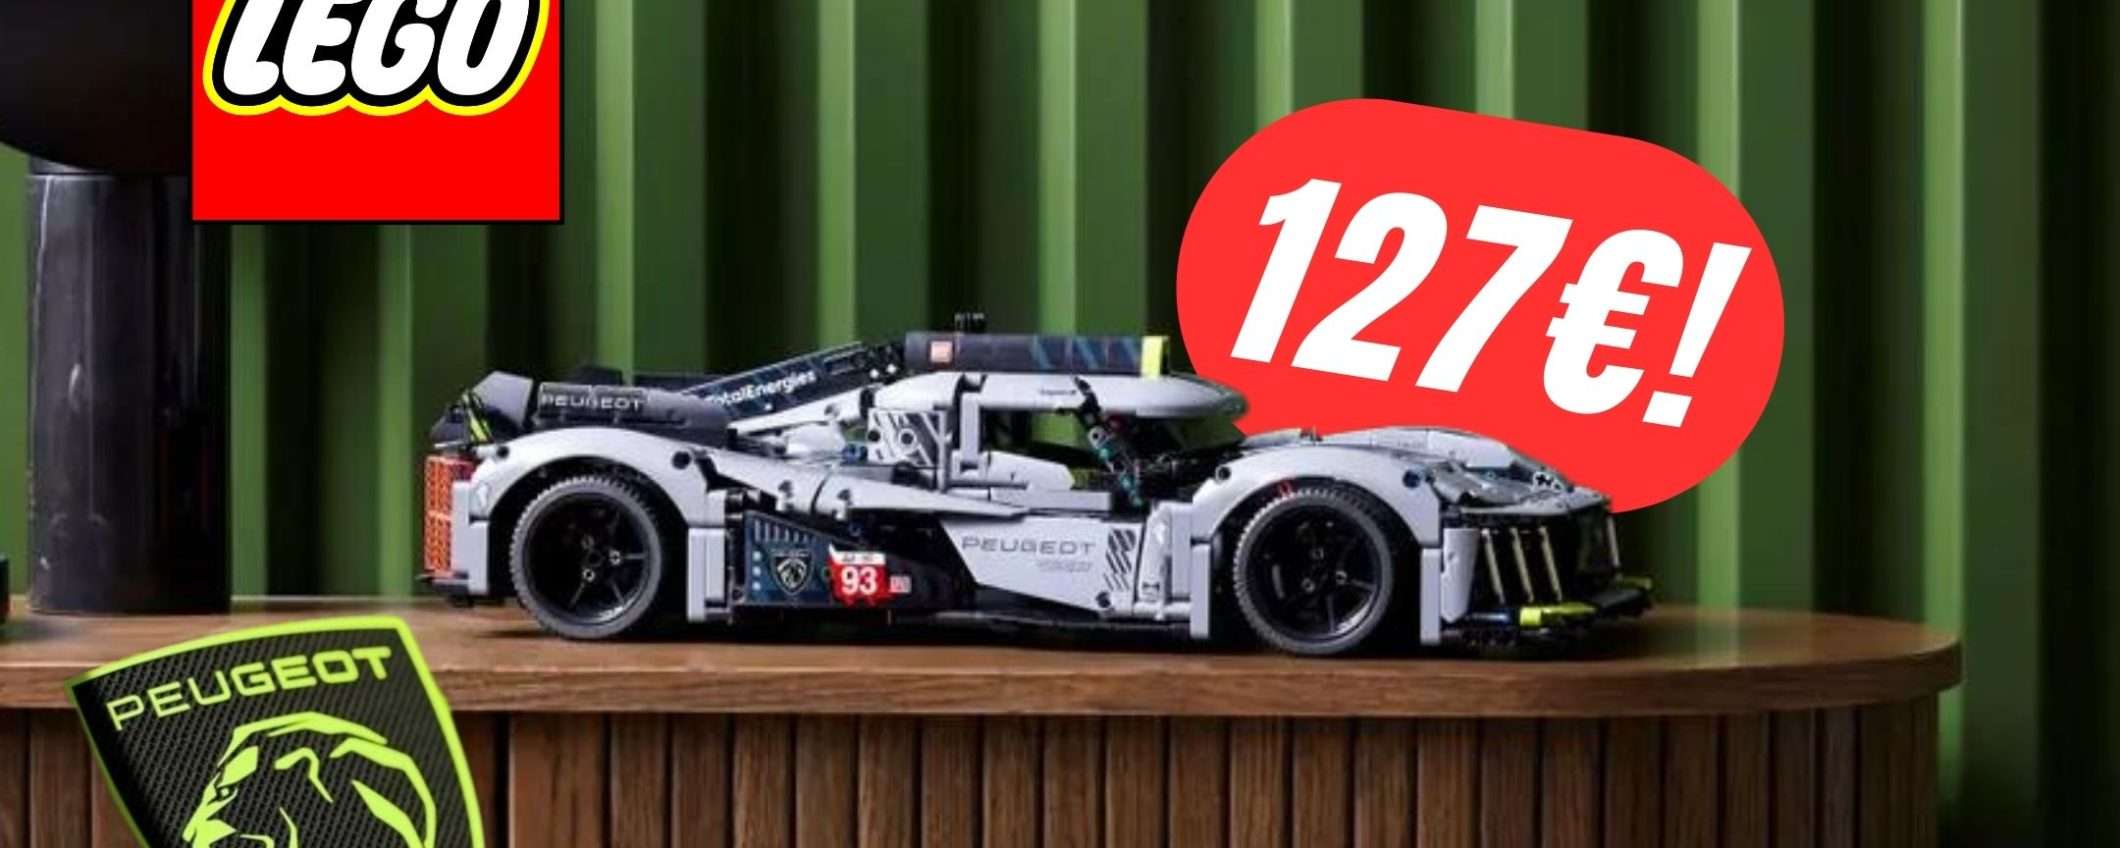 La bellissima PEUGEOT 9X8 Le Mans in versione LEGO costa solo 127€ grazie al COUPON!